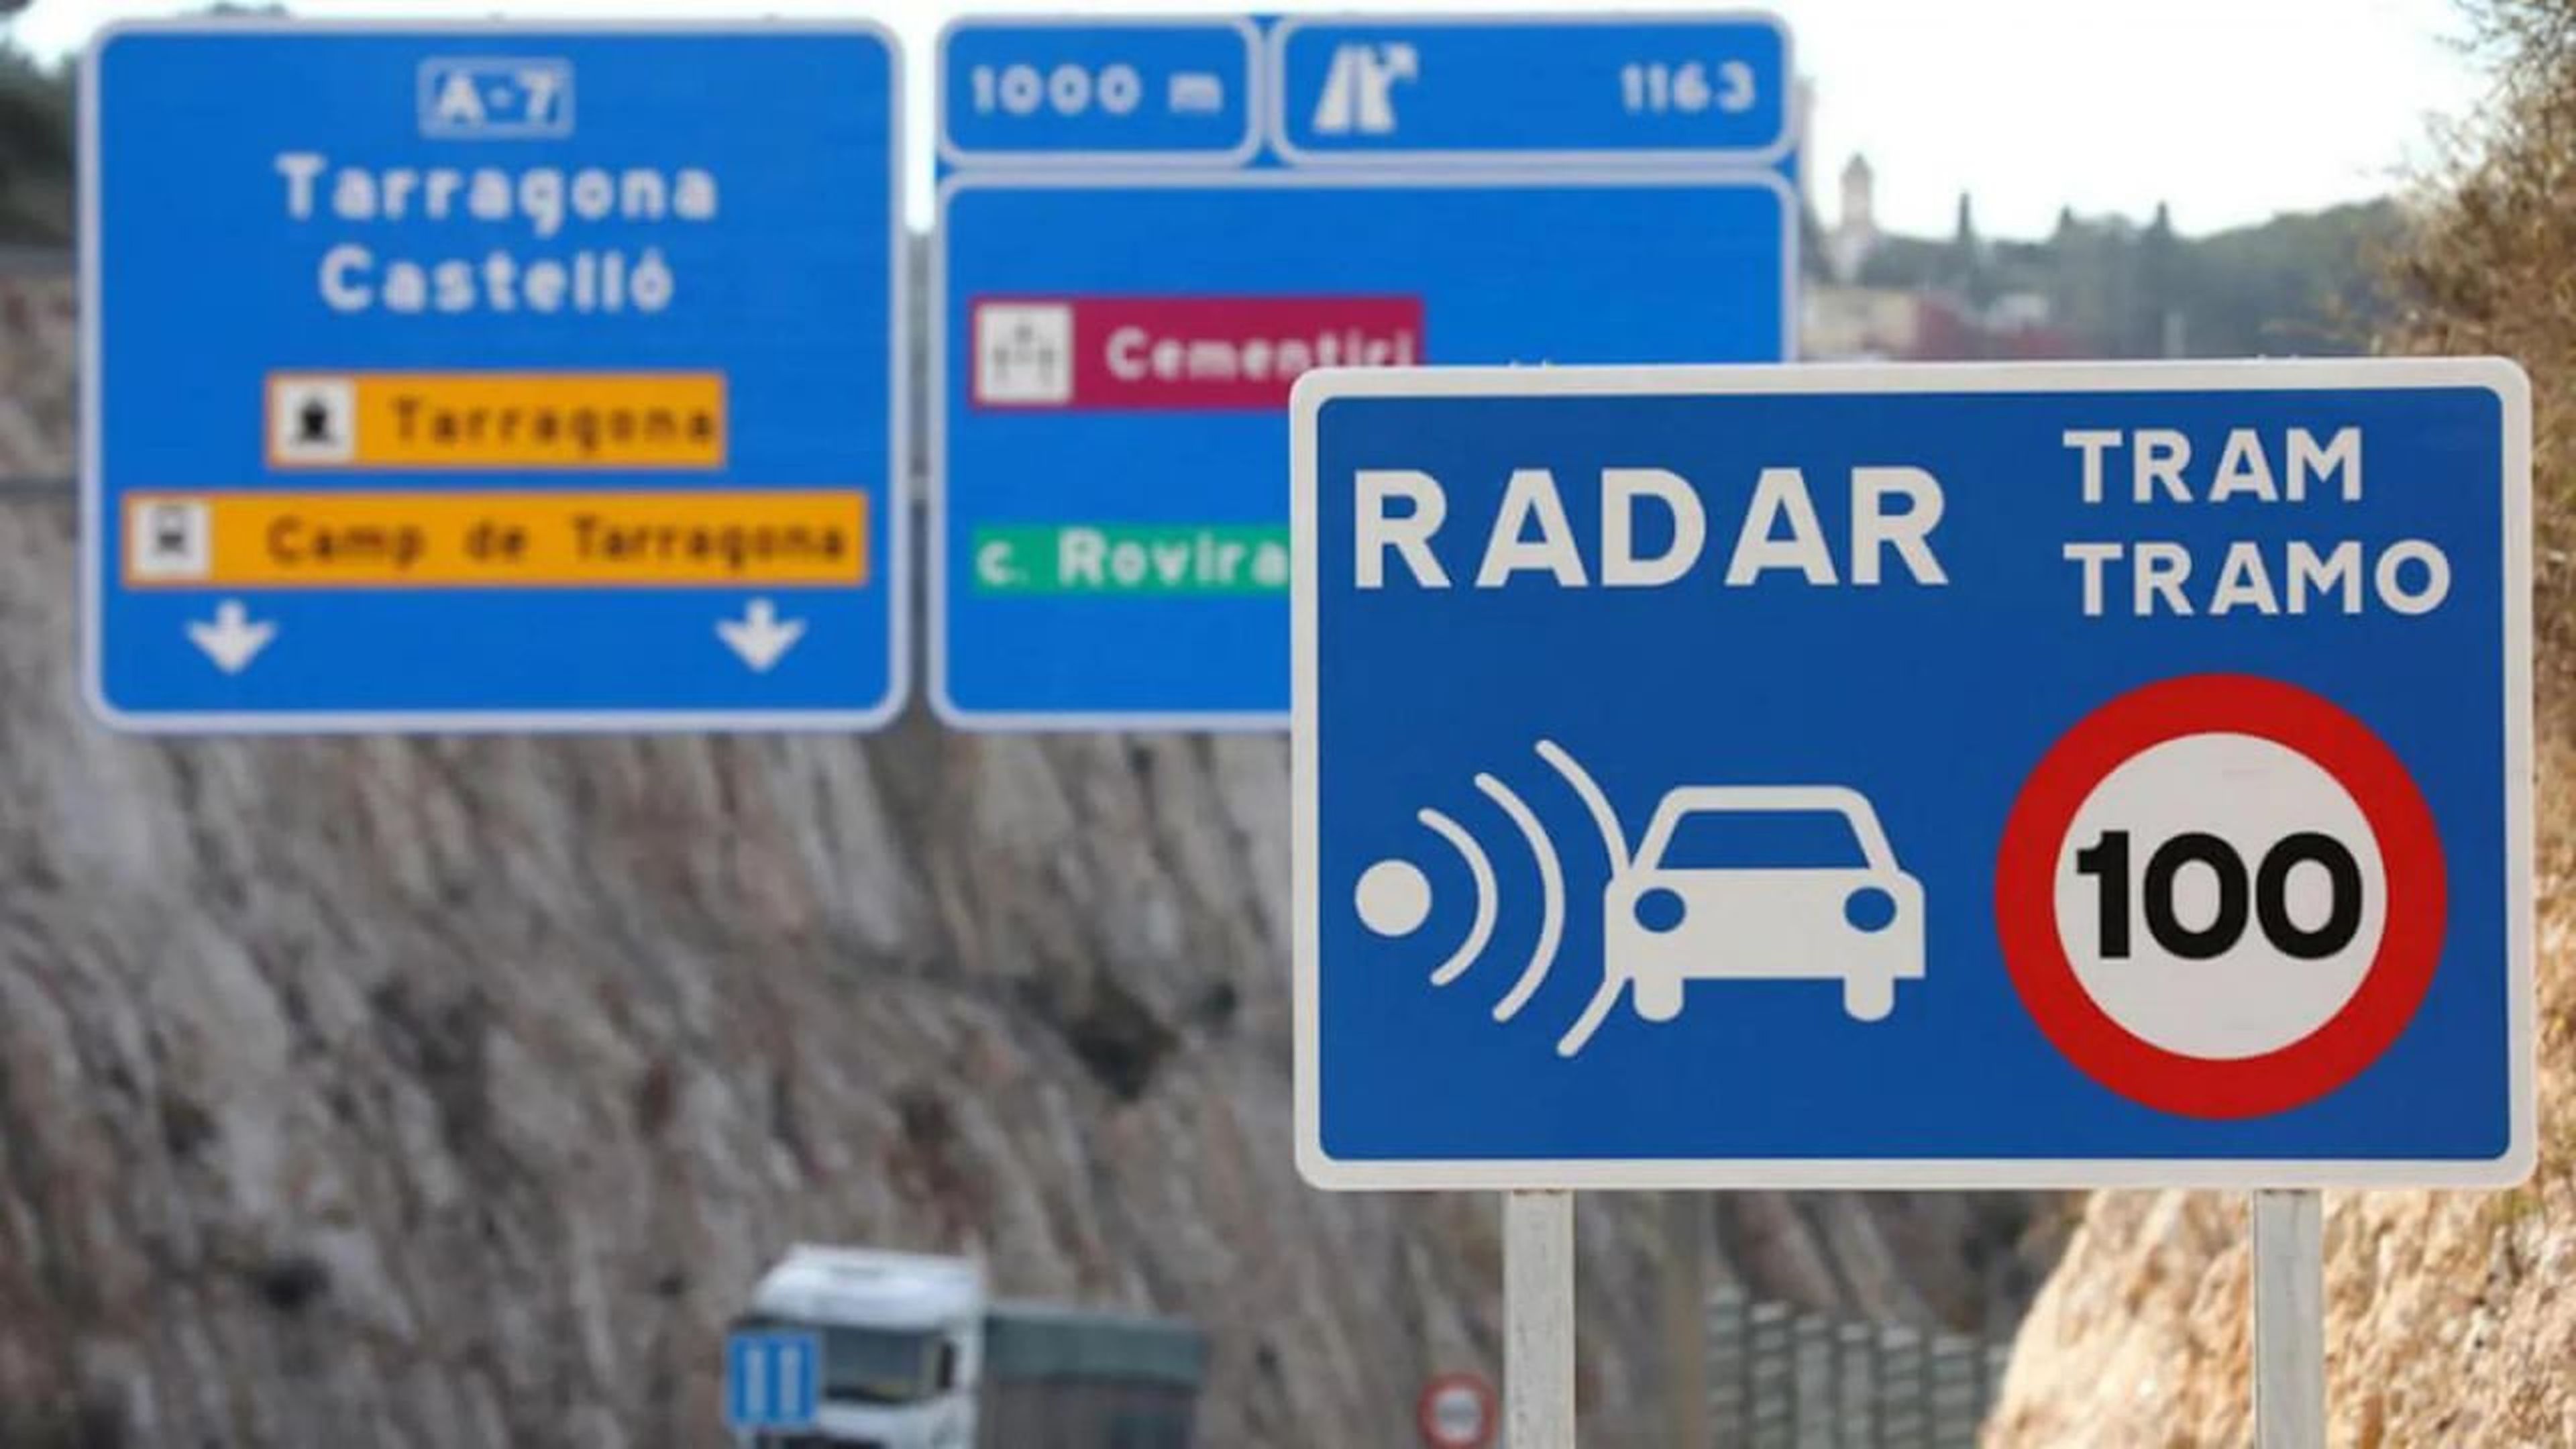 Radar de tramo